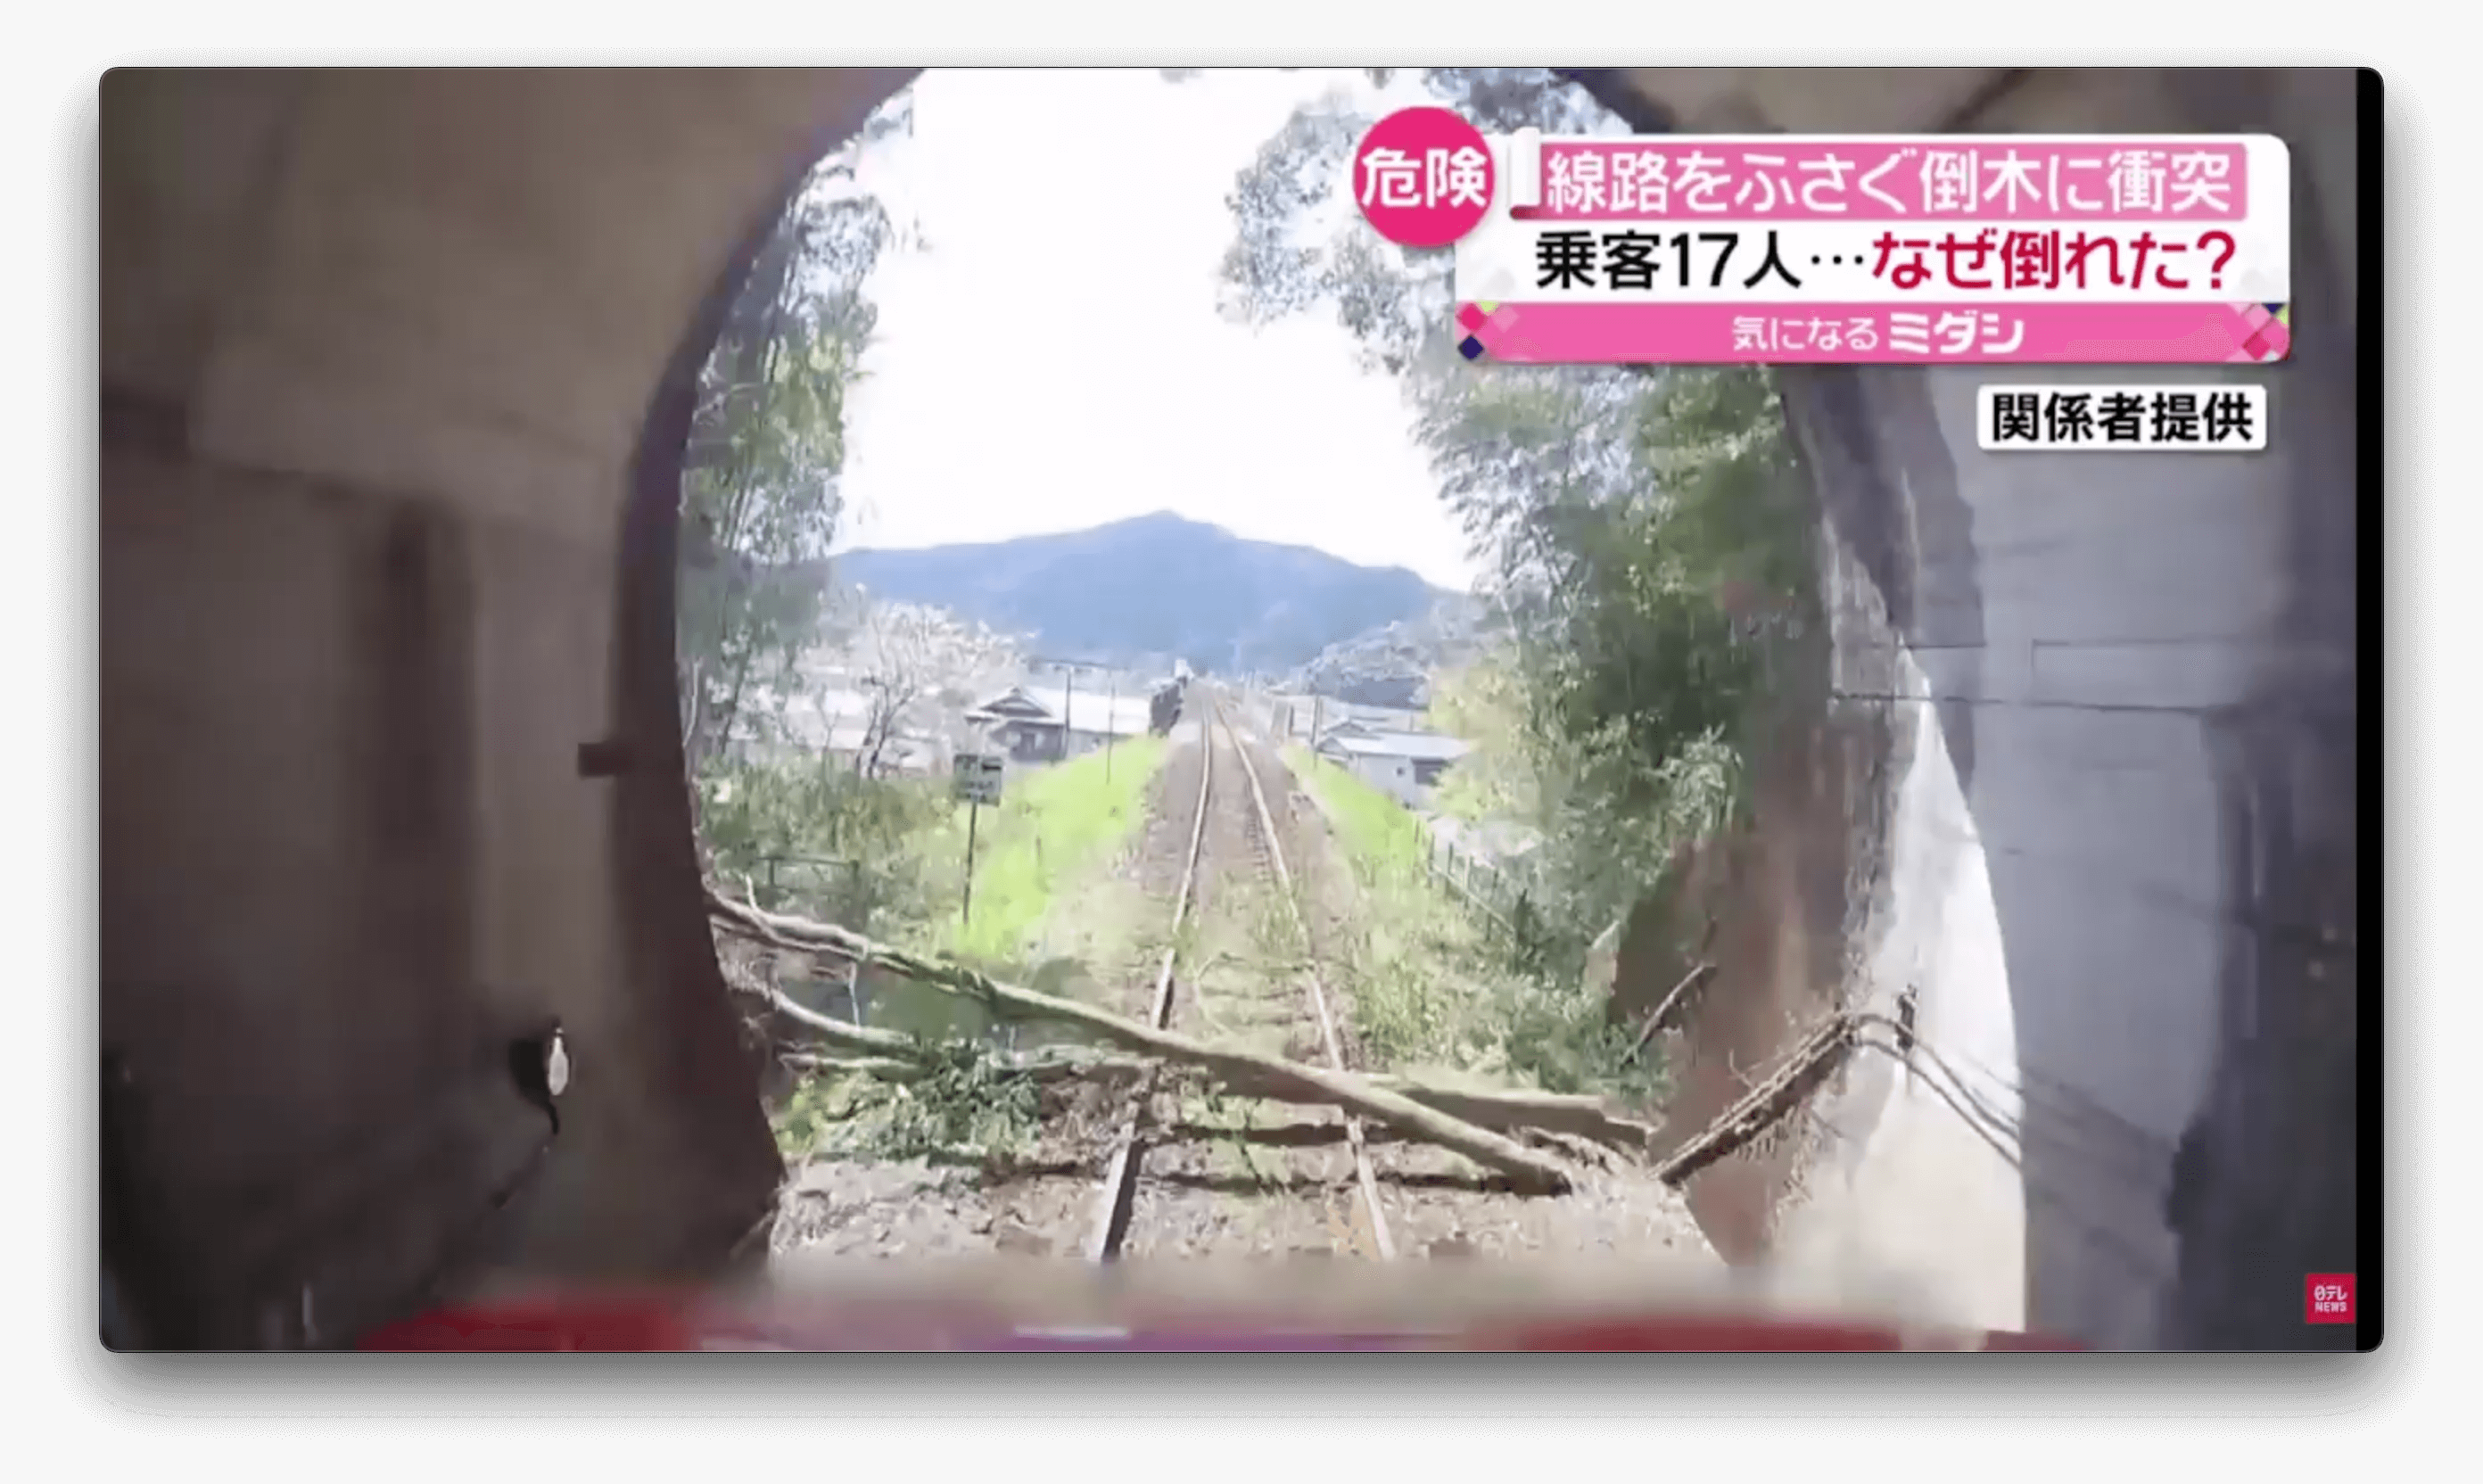 Veículo colide com árvore na saída de túnel no Japão 